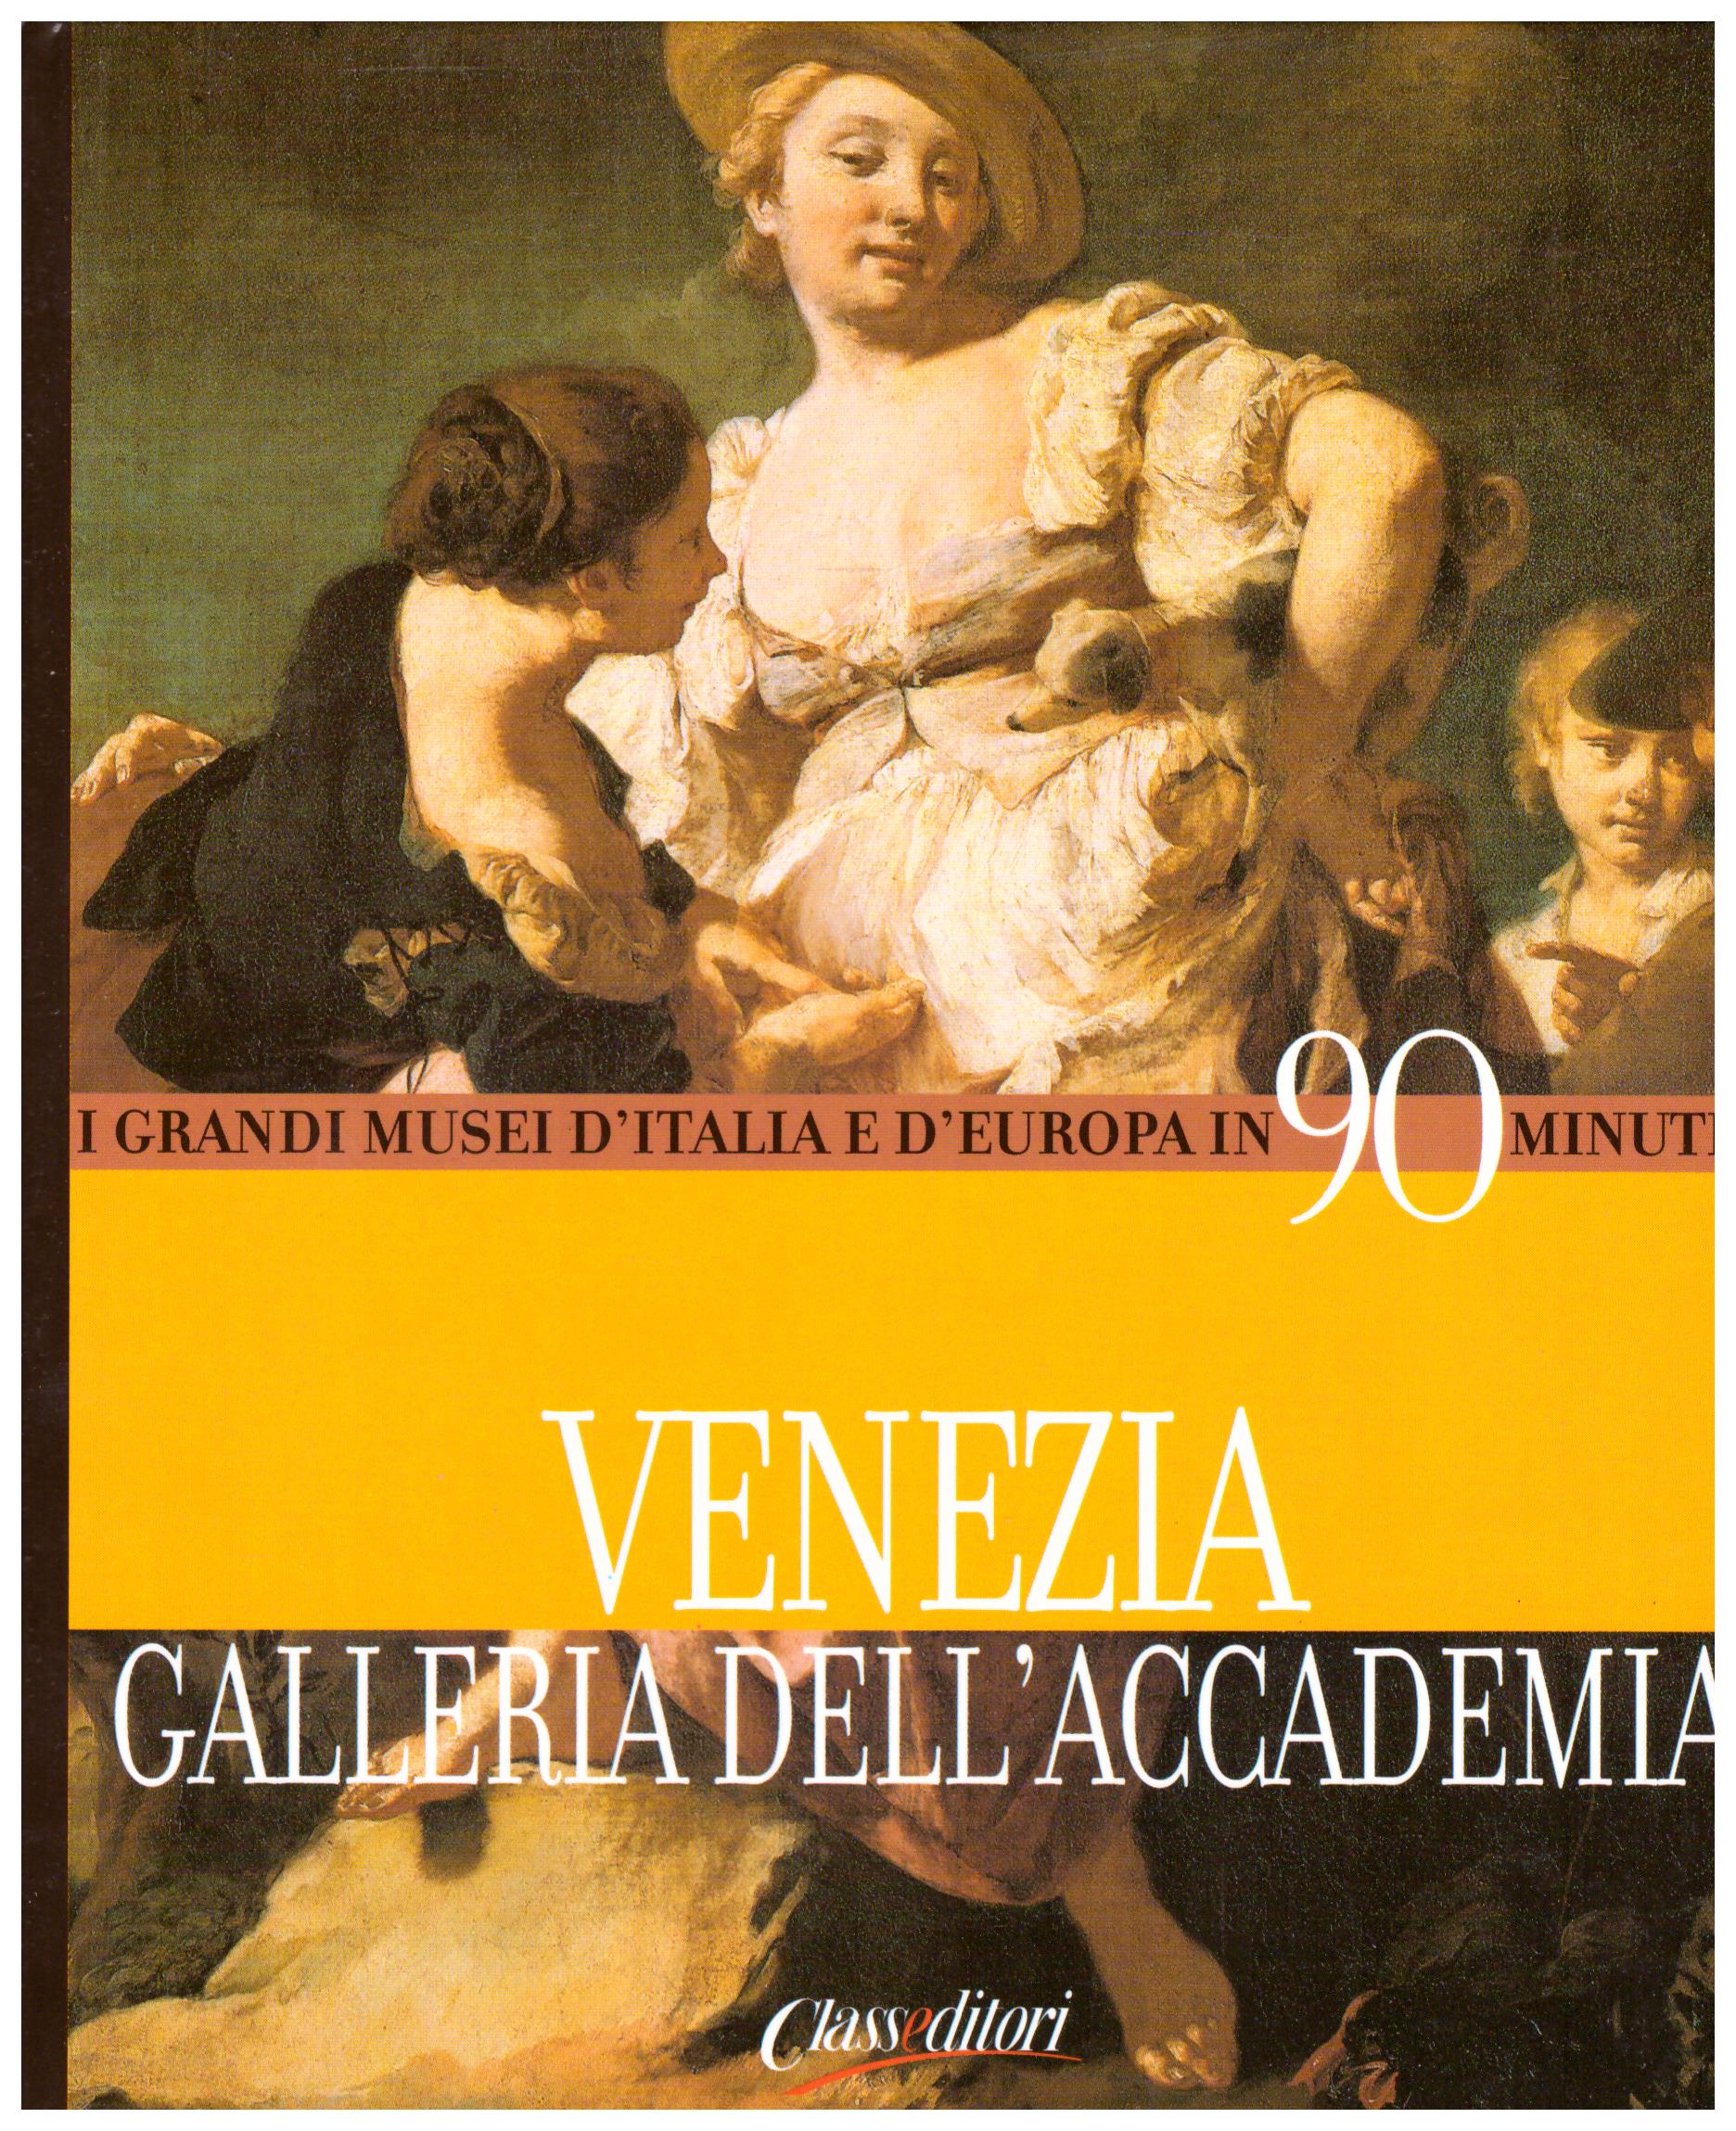 Titolo: I grandi musei d'italia e d'Europa in 90 minuti, Venezia galleria dell'accademia Autore : AA.VV.  Editore: class editori